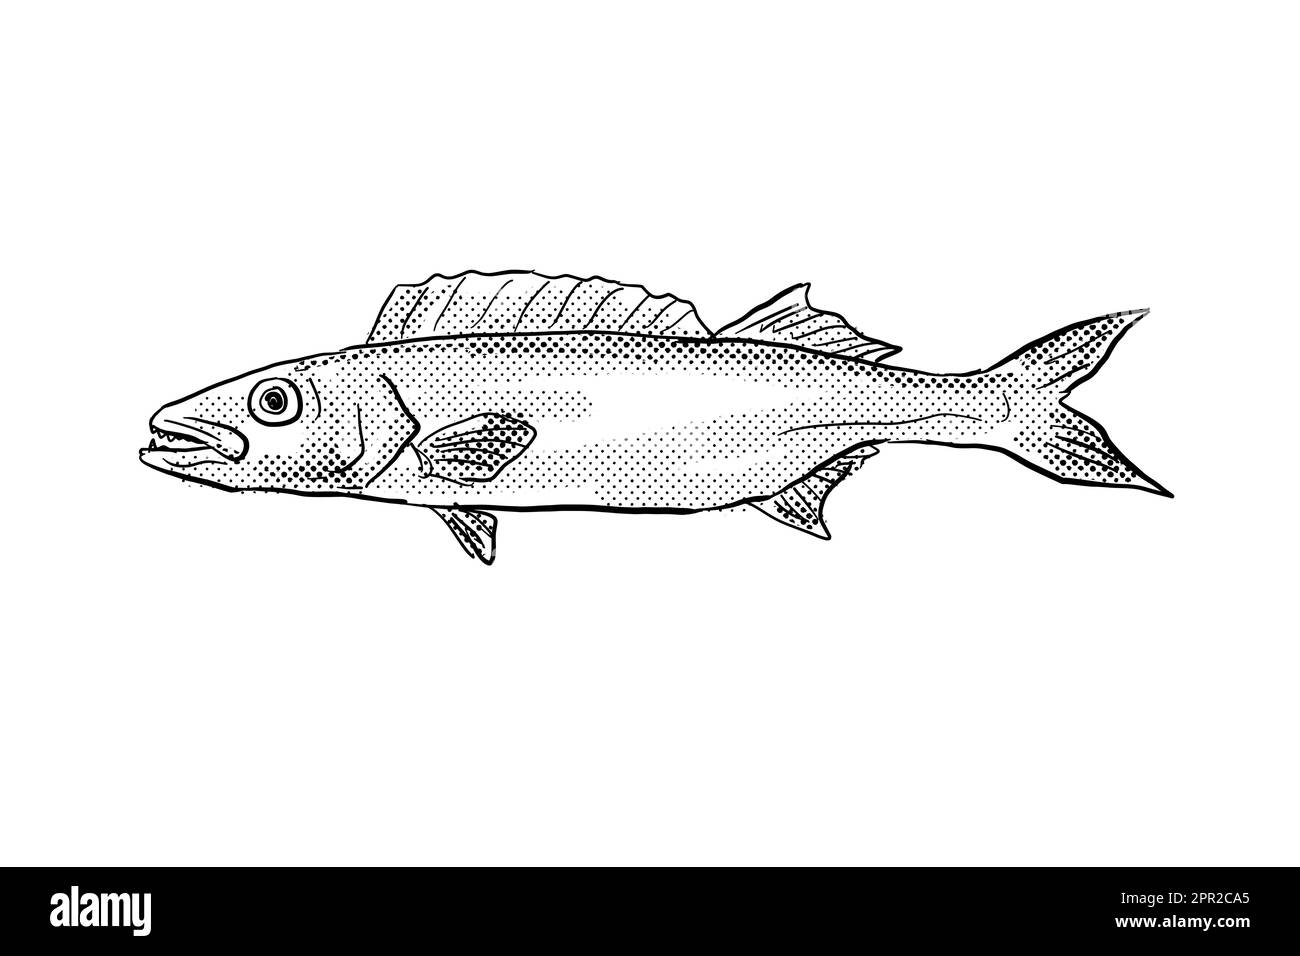 Dessin de style caricaturé d'un poisson-huile Ruvette pretiosus une espèce de poisson-maquereau serpent un poisson endémique à Hawaï et l'archipel hawaïen avec ha Banque D'Images